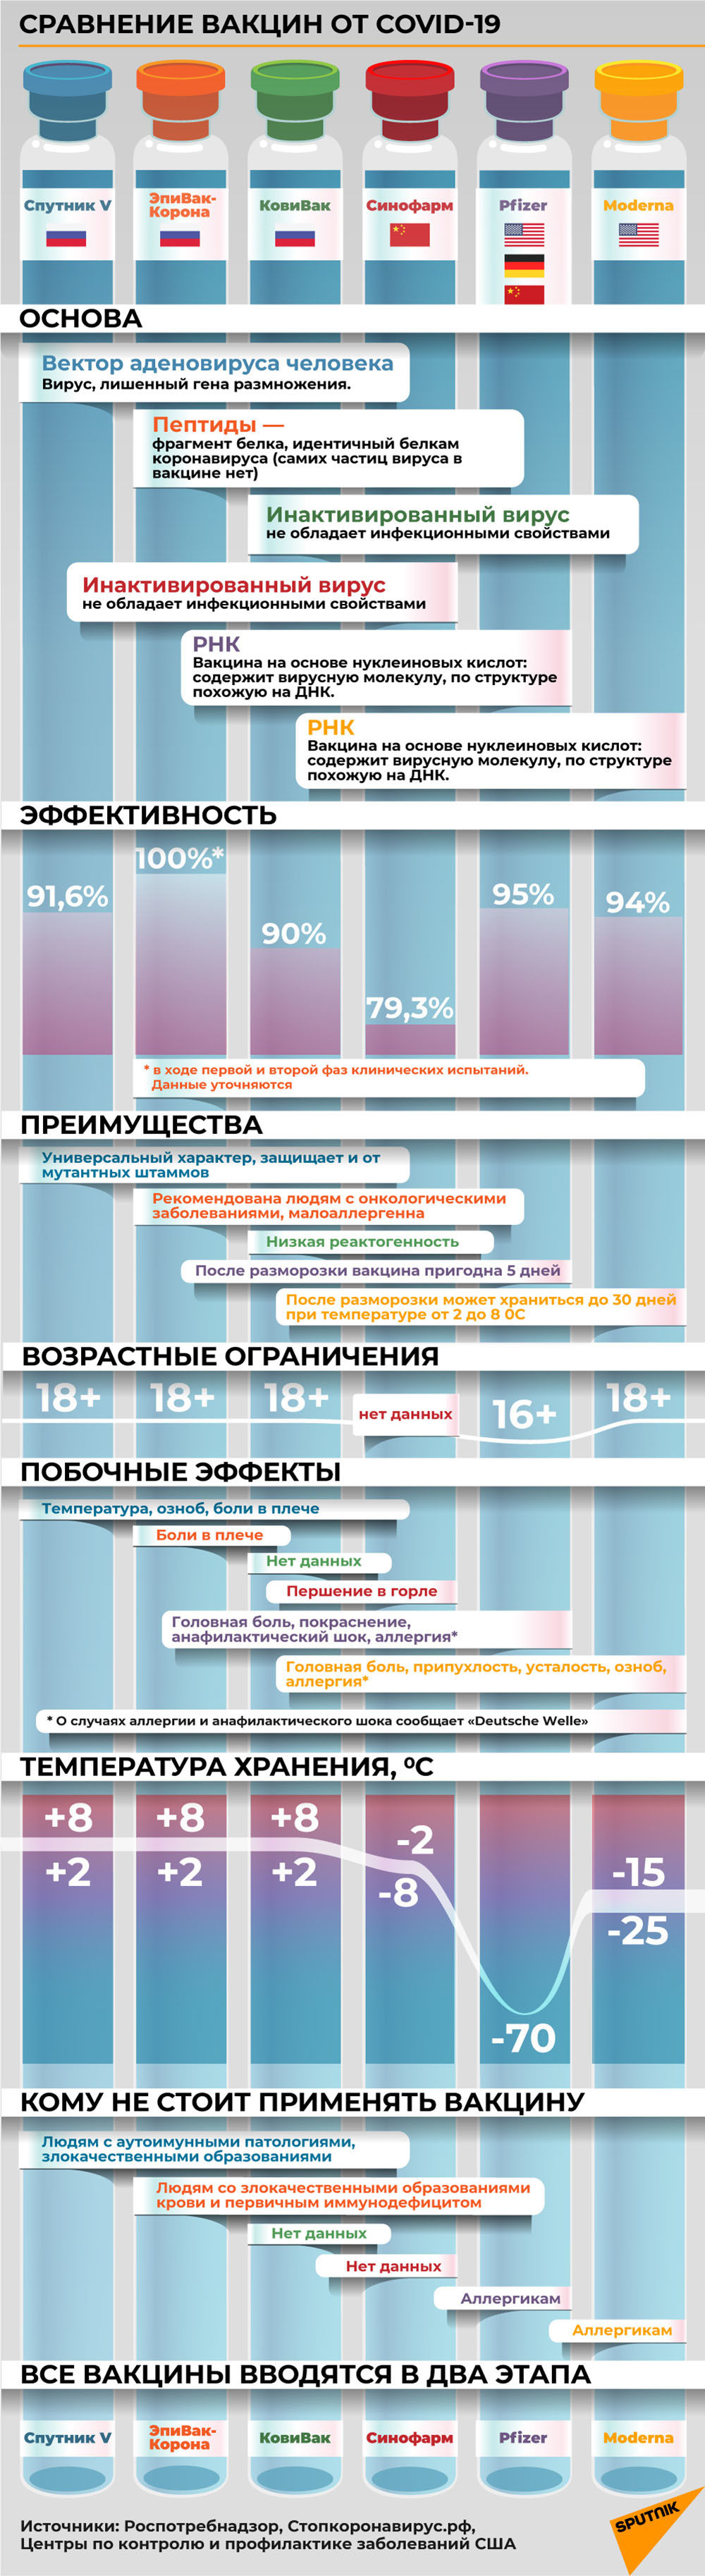 Инфографика: Сравнение вакцин от COVID-19 - Sputnik Азербайджан, 1920, 20.02.2021